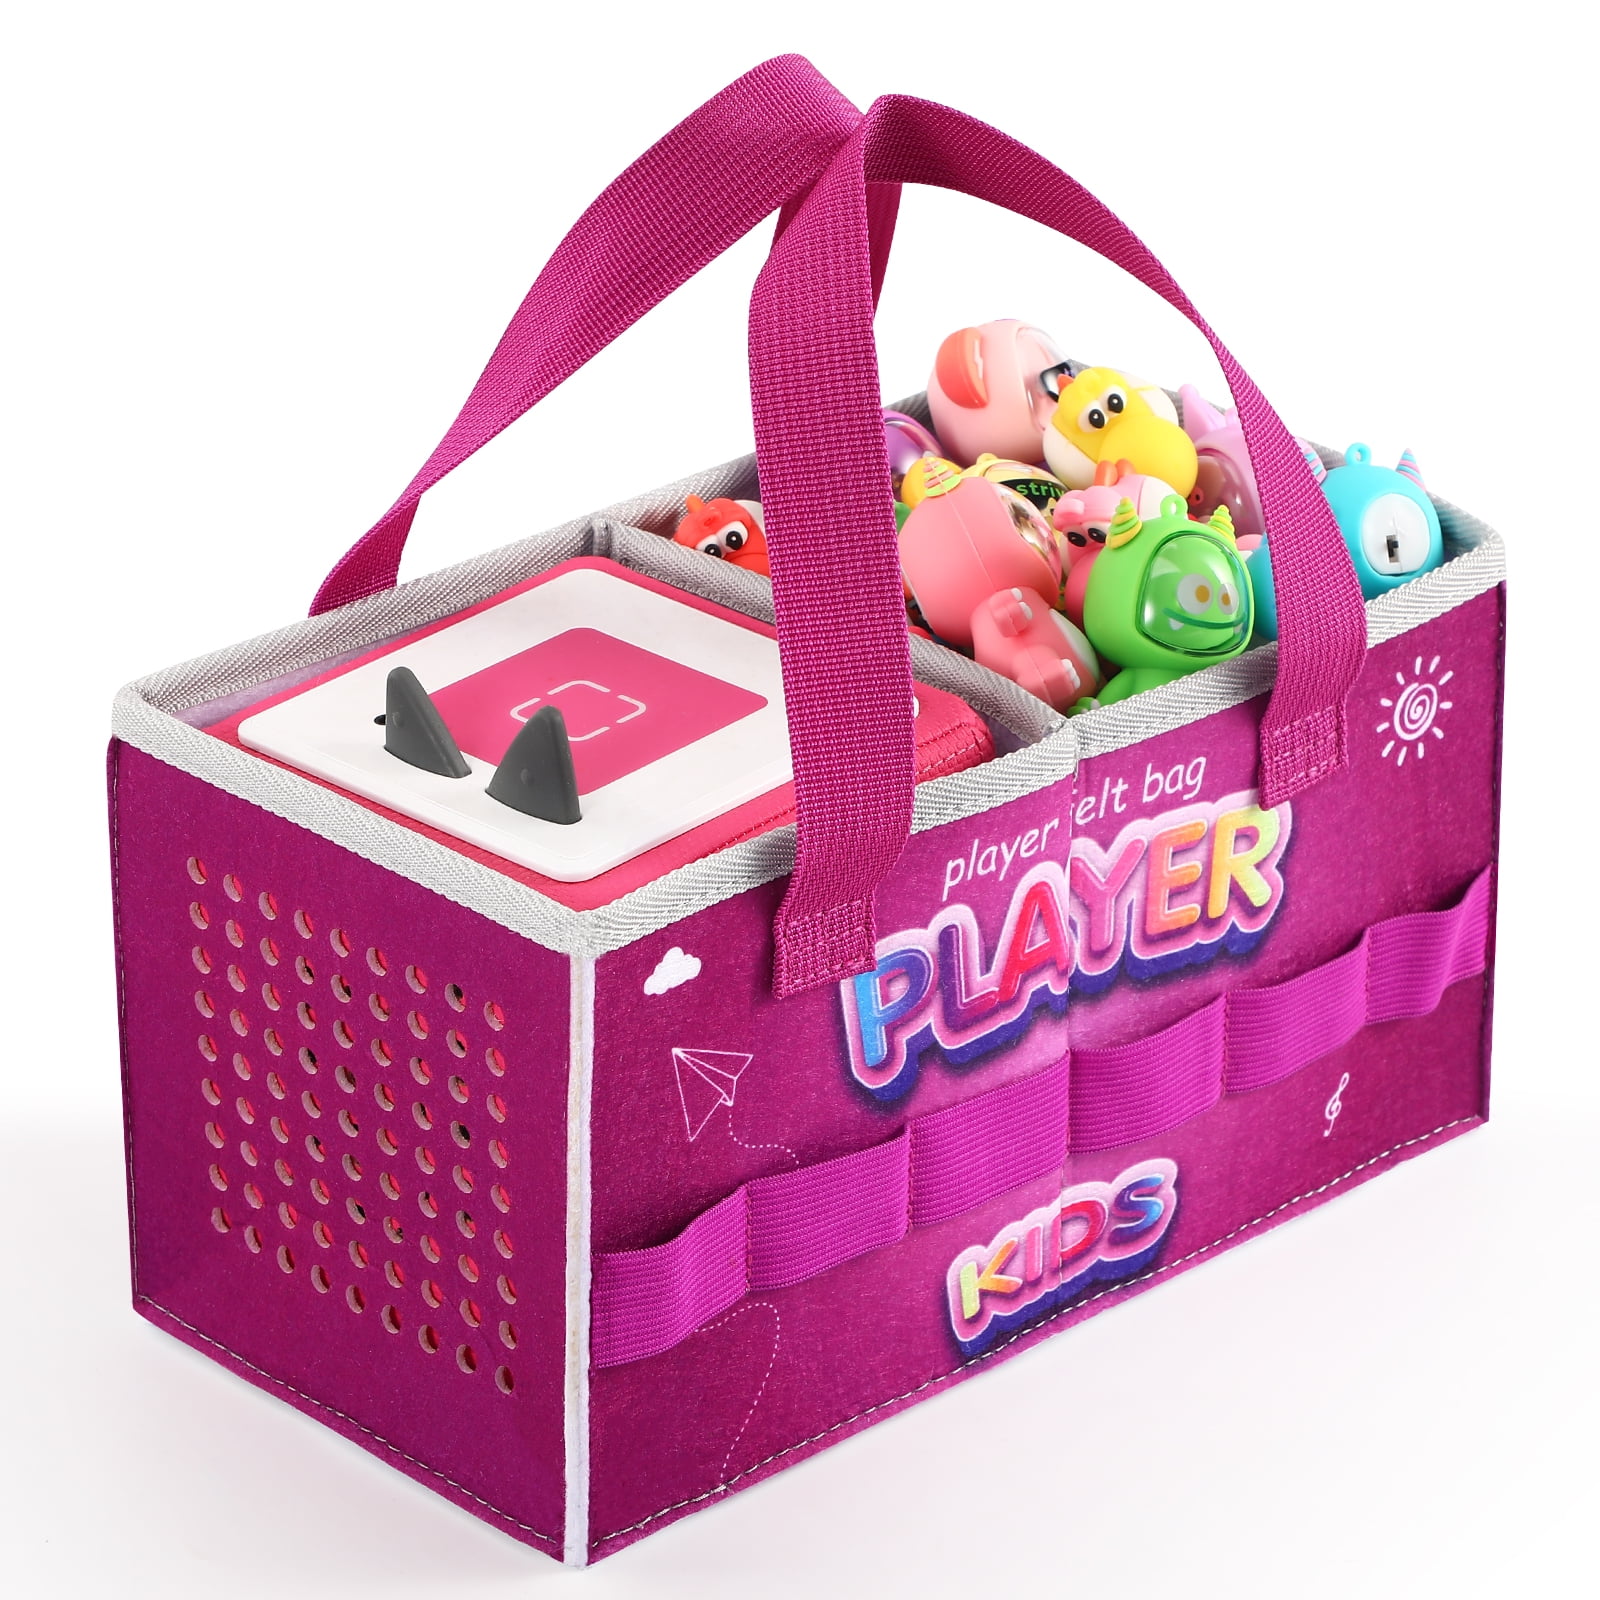 Sac de transport compatible Toniebox Starter Set et accessoires, Felt  Organisateur Bag pour Tonies Figure Toniebox Travel avec poignée